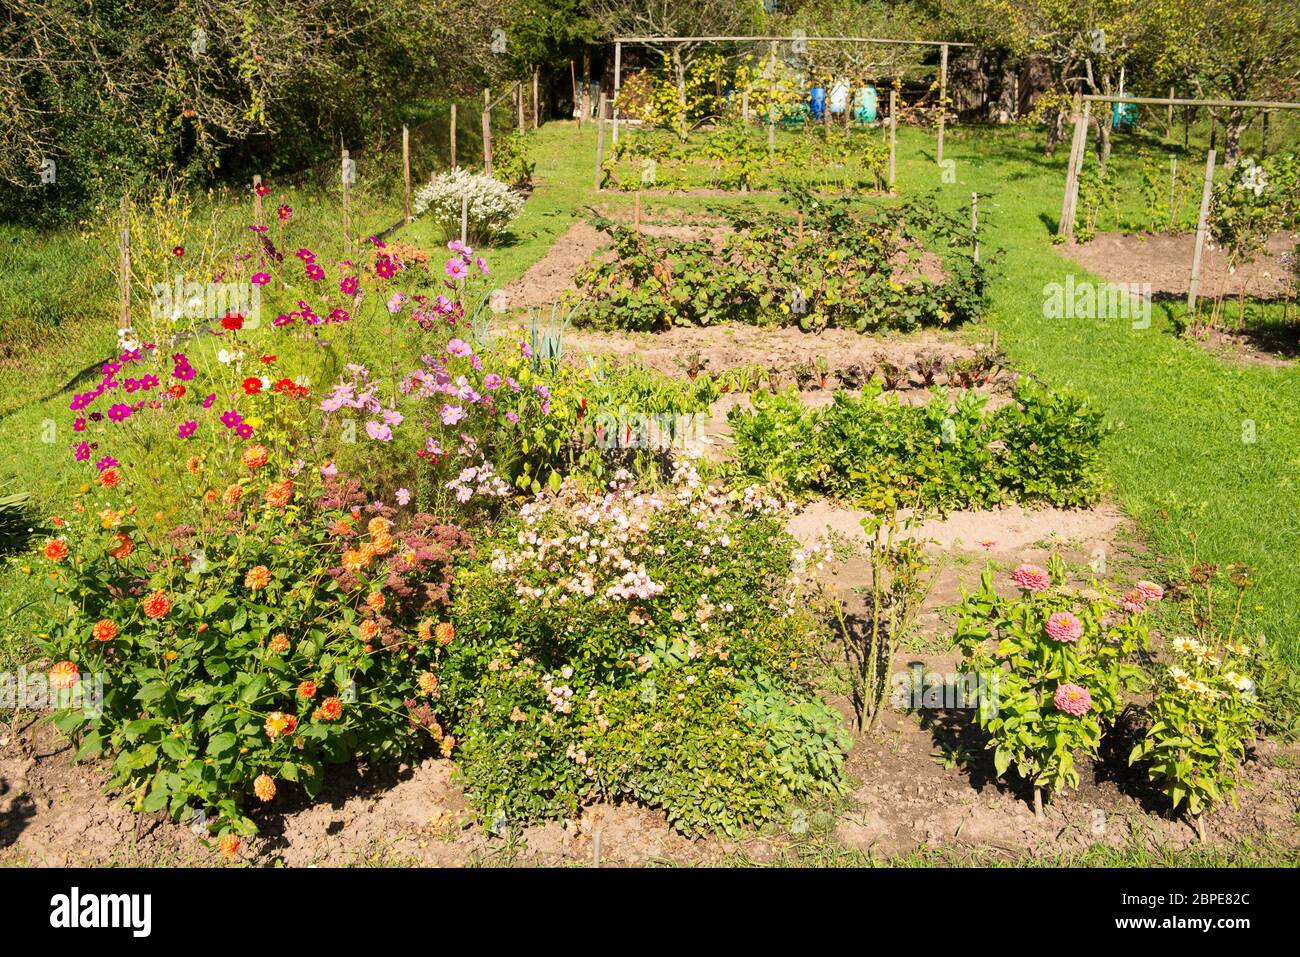 Garten mit blühenden Blumen, Gemüse und Obst Foto Stock